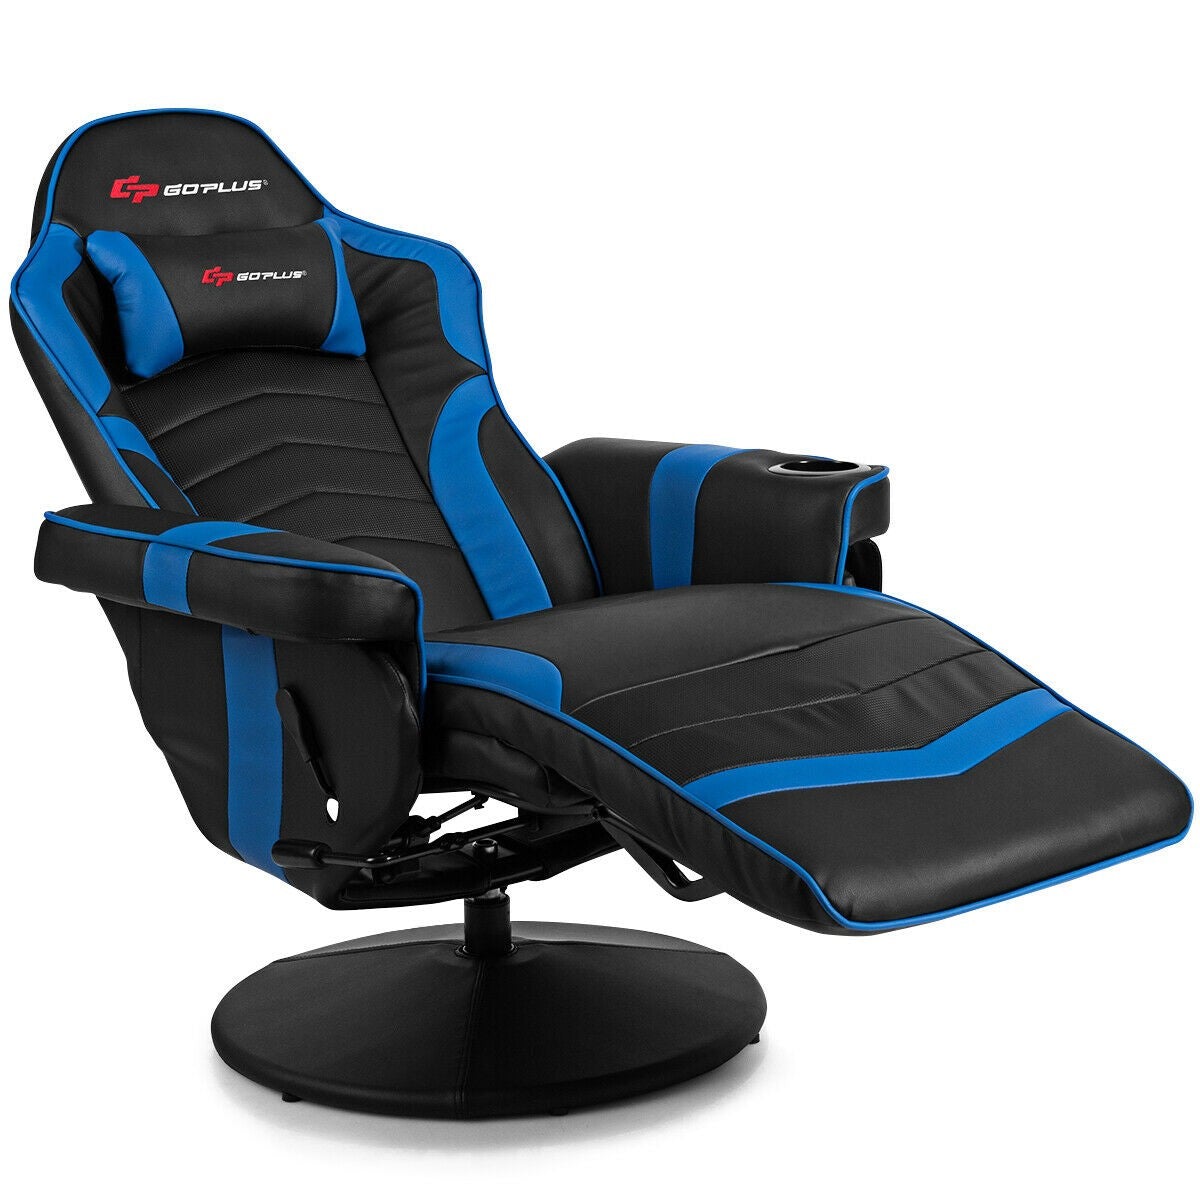 Staple Gaming Chair Cushions